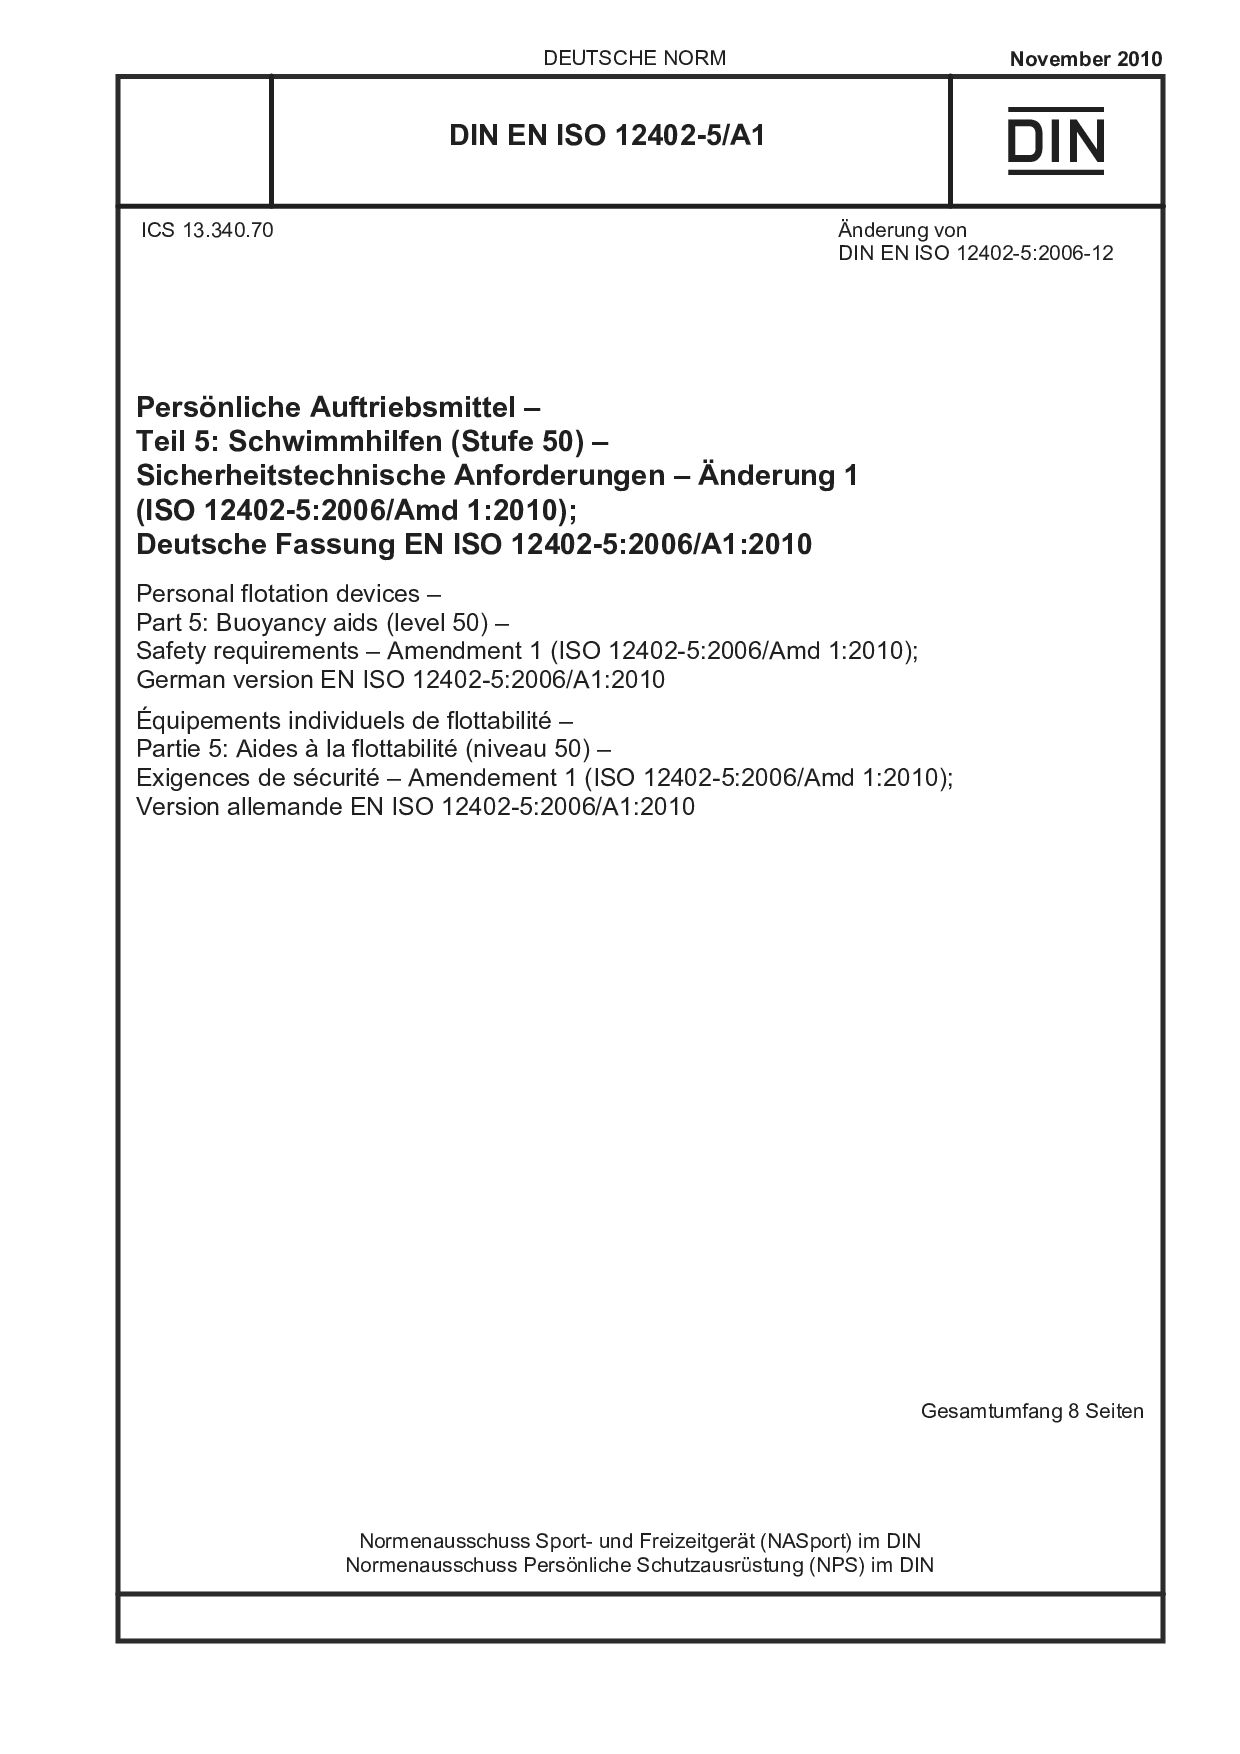 DIN EN ISO 12402-5/A1:2010